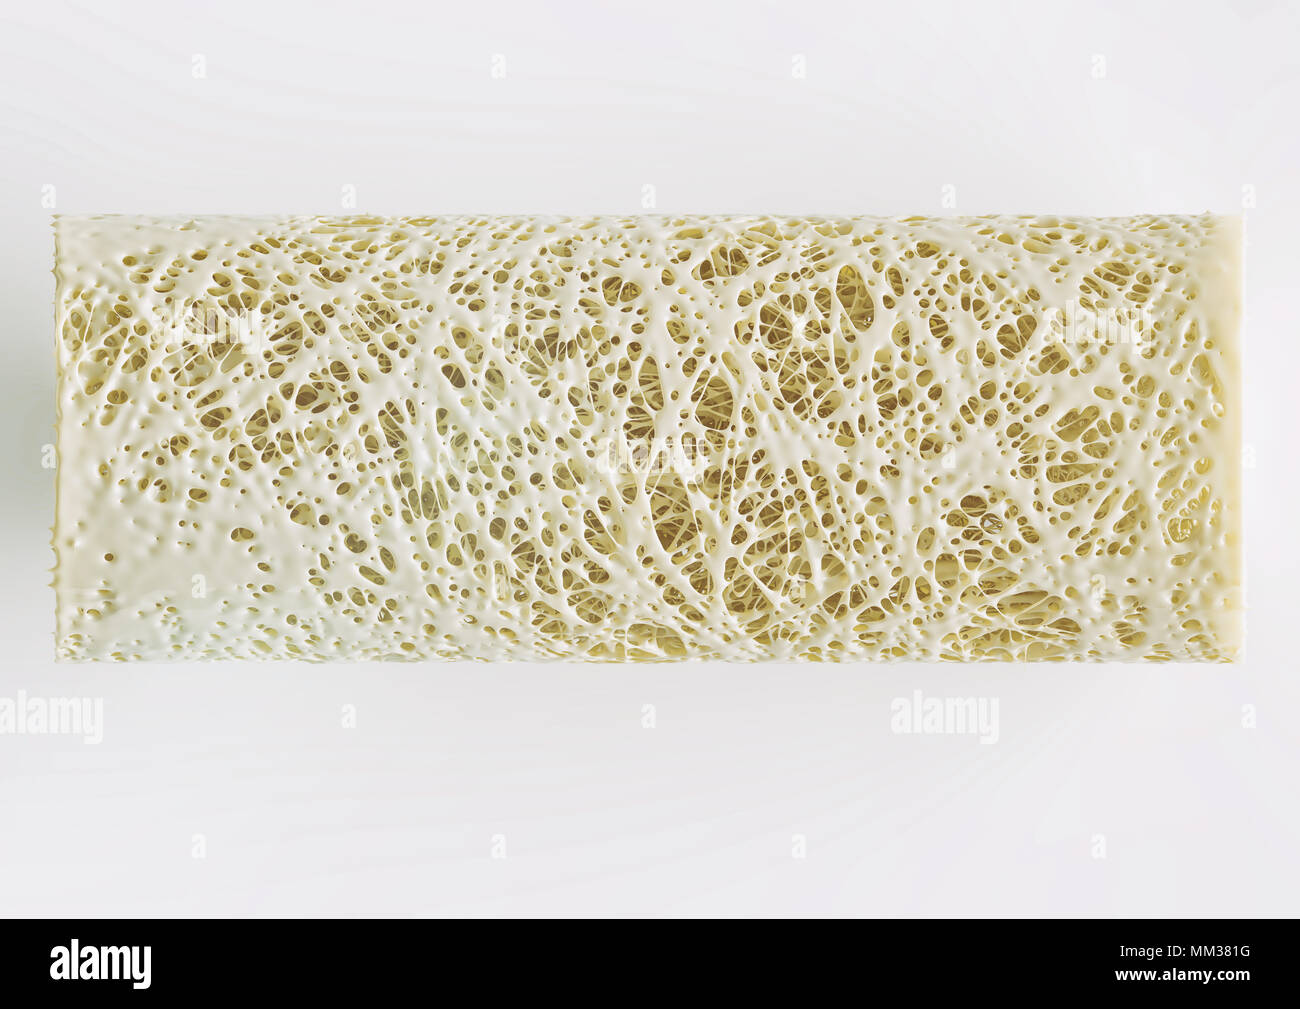 Querschnitt einer fortgeschrittenen Osteoporose - hohe Details - Stufe 4 - 3D-Rendering Stockfoto